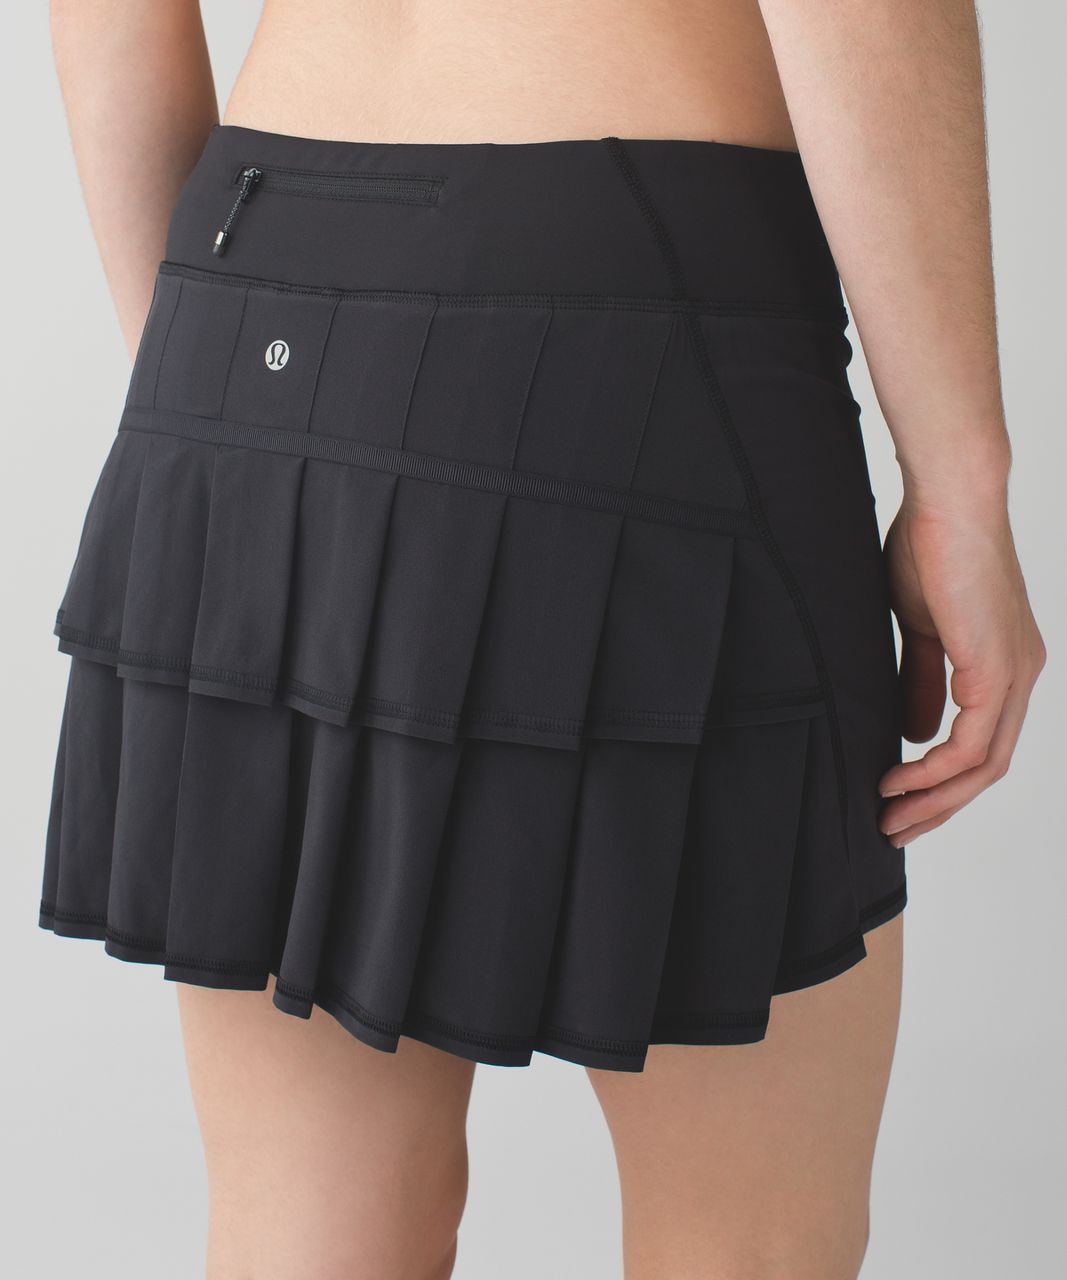 lululemon skirt tall